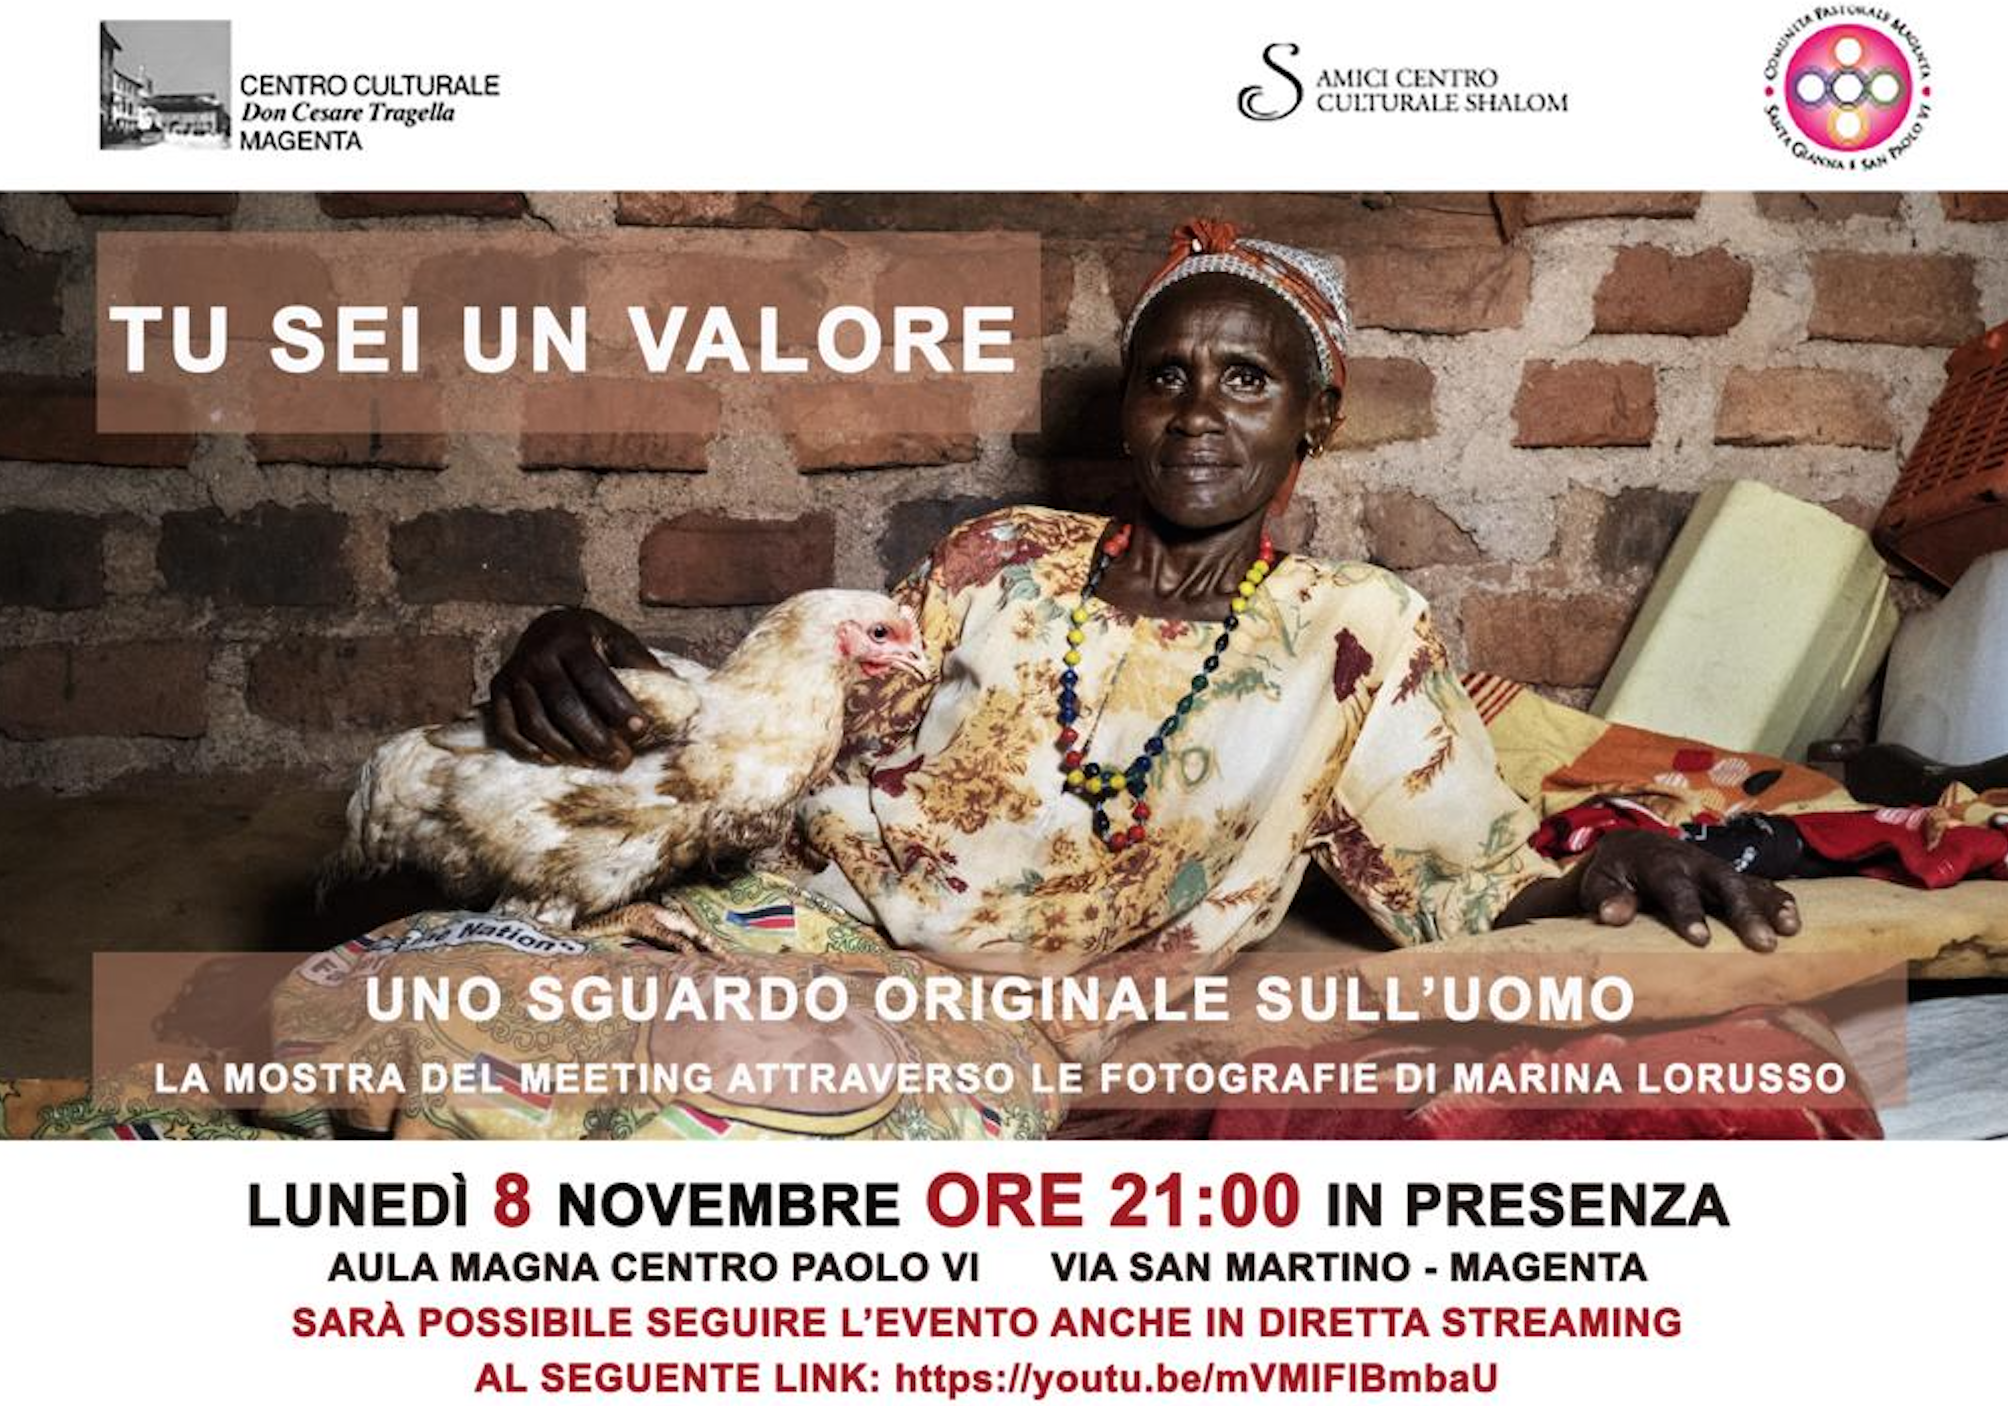 Featured image for “Magenta: Tu sei un valore”